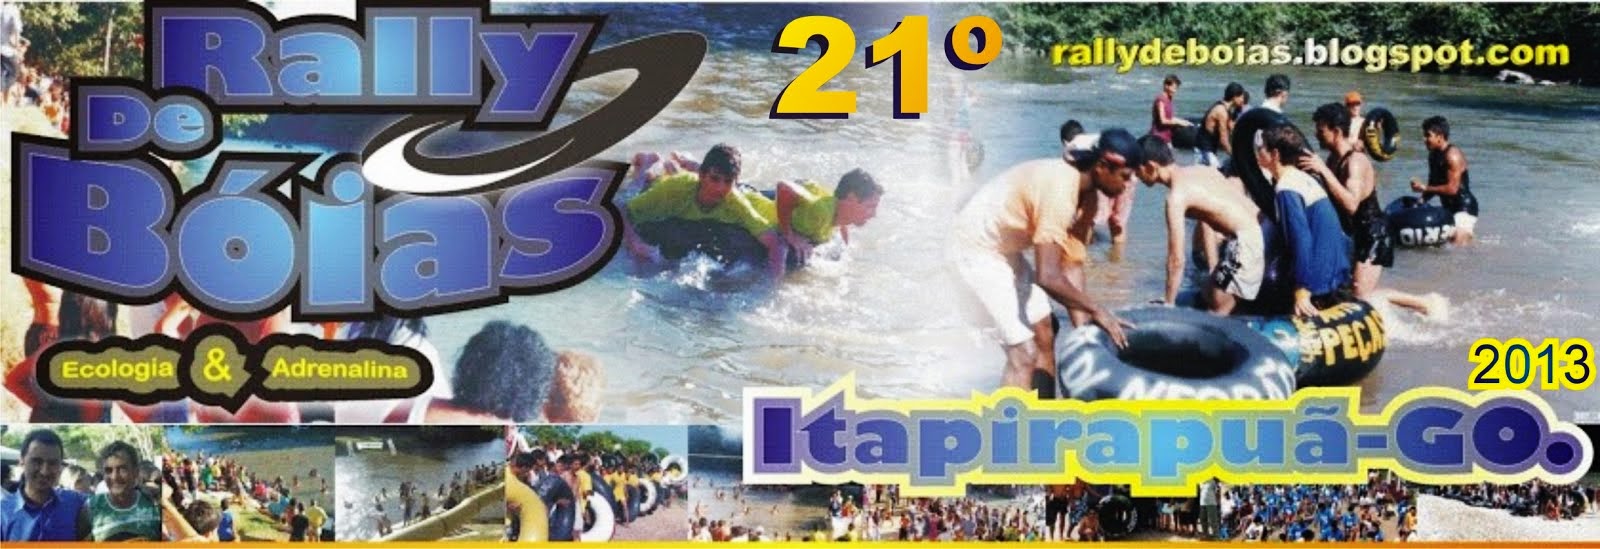 21º Rally de Bóias de Itapirapuã-GO